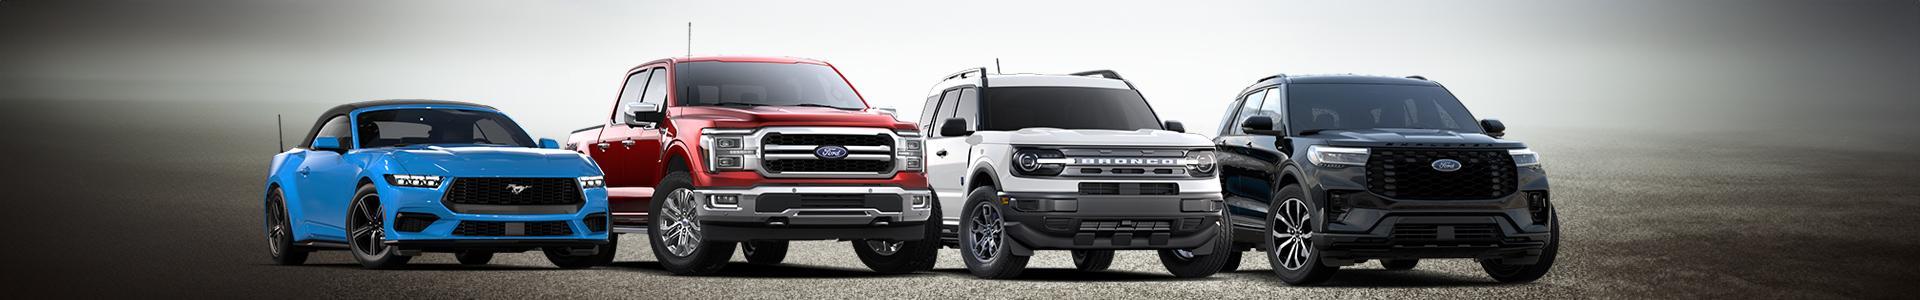 Vehículos del futuro Ford | Concesionarios Ford del sur de California